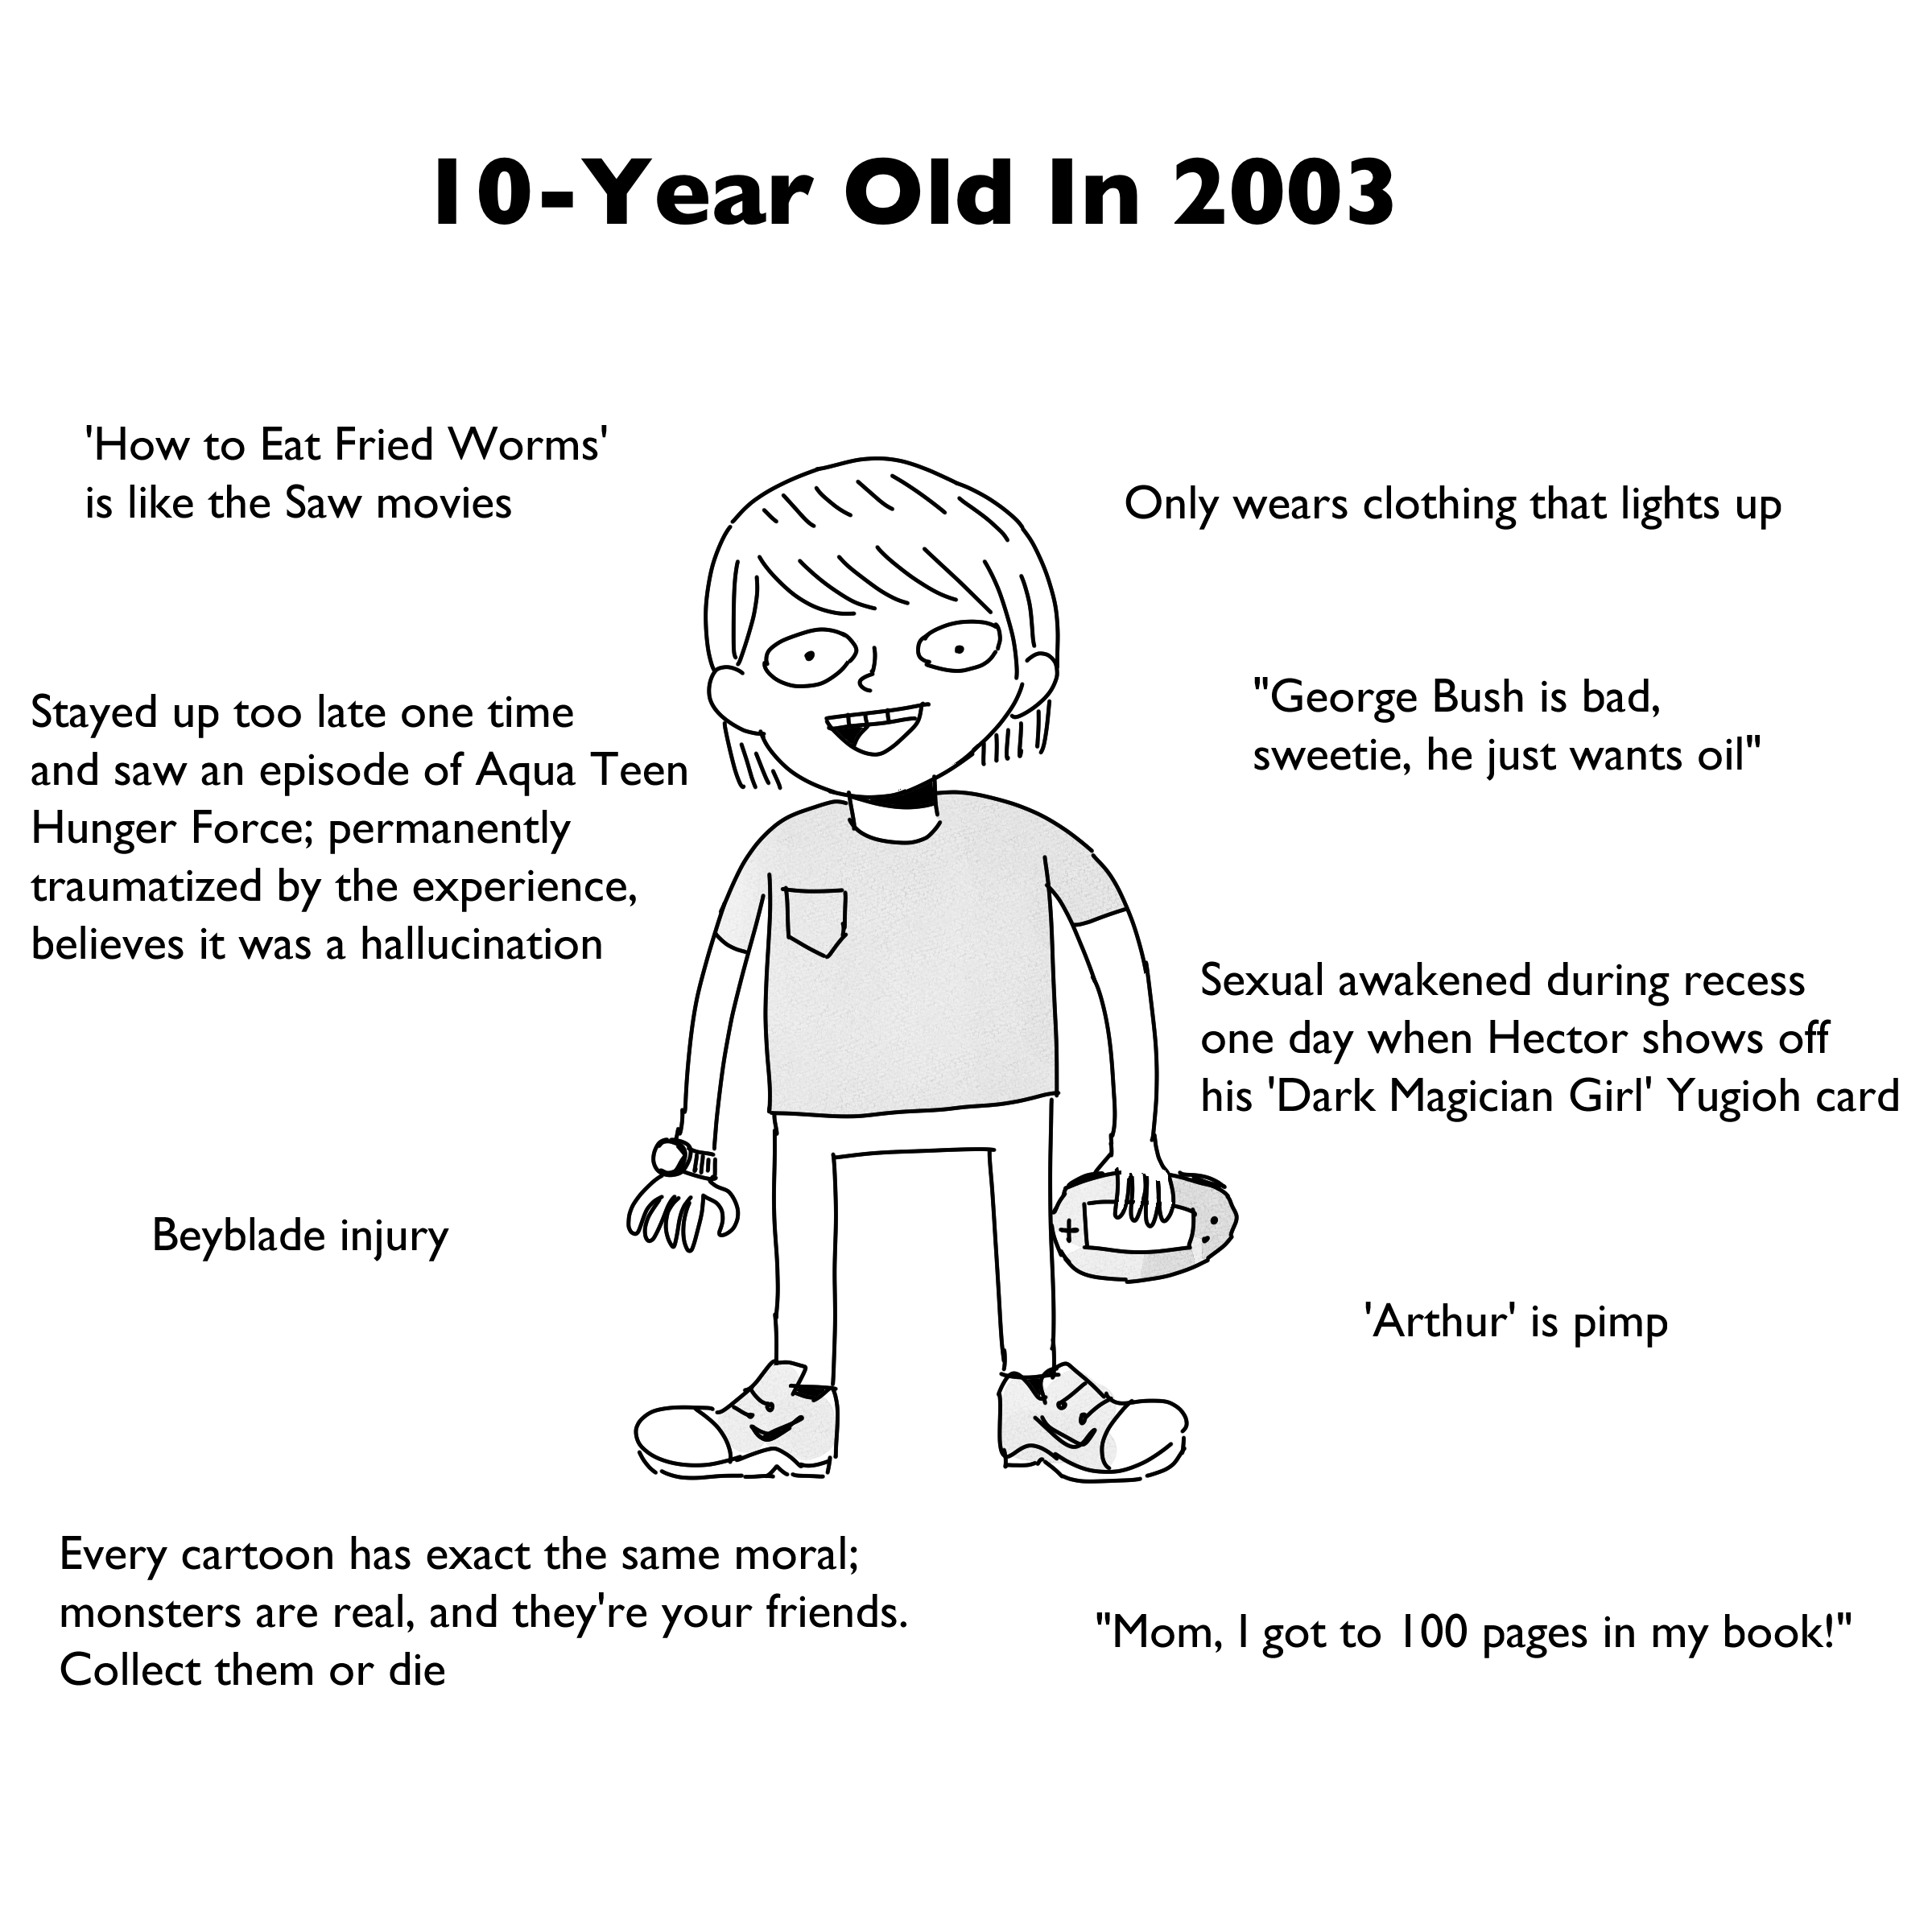 chocken smirk on Twitter: "10 in 2003 vs 10 Year-Olds in 2020 https://t.co/vBhCjqnMk8" / Twitter